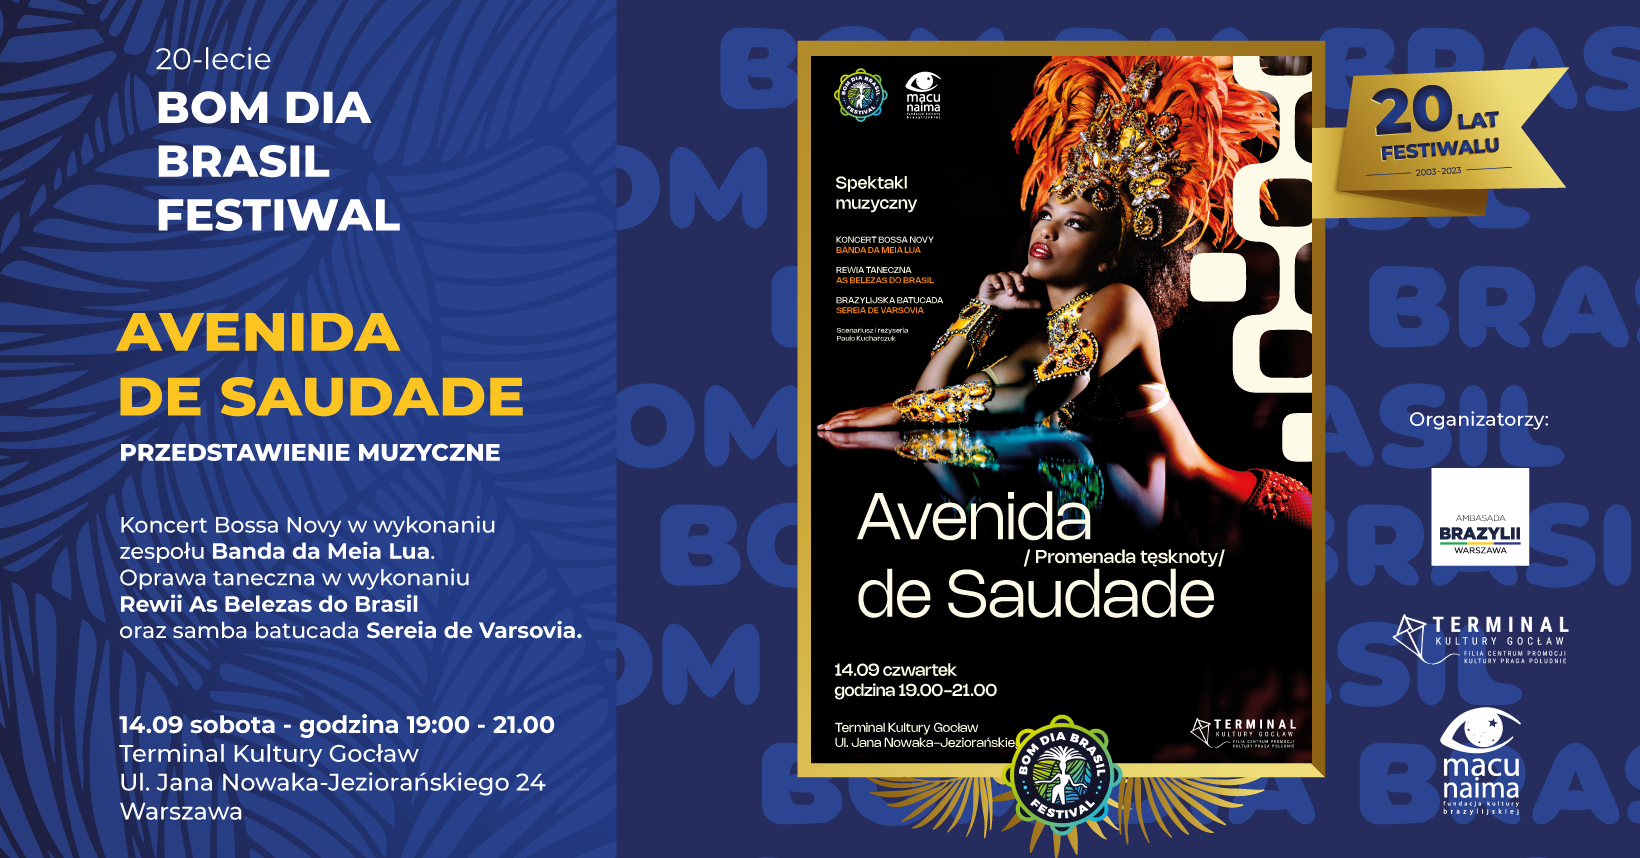 Spektakl muzyczny: Avenida de Saudade (Promenada tęsknoty)